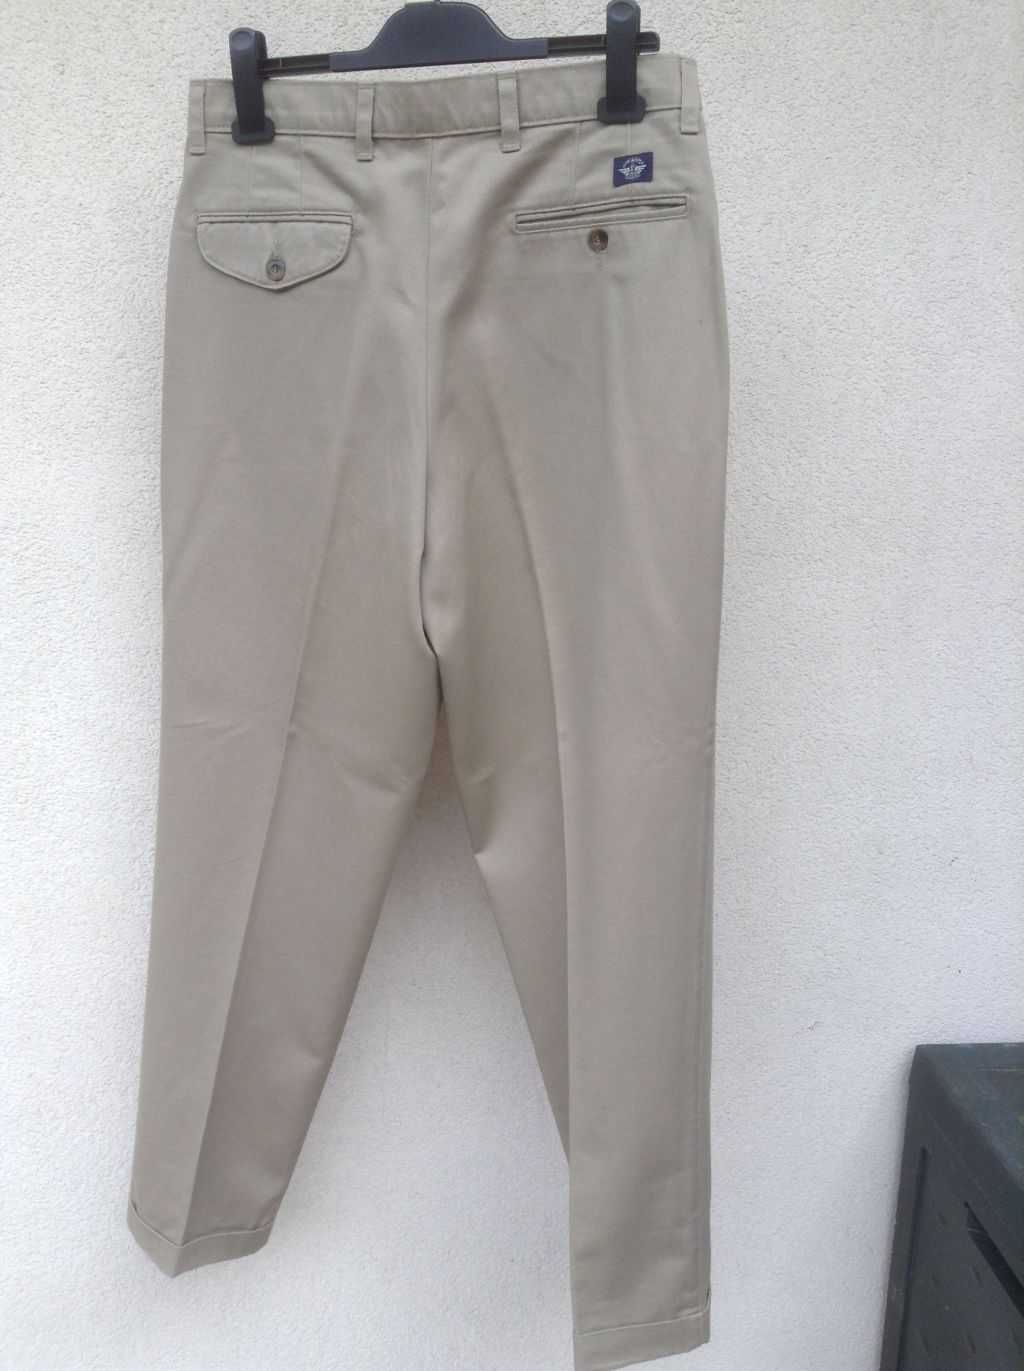 Spodnie męskie  DOCKERS 100% bawełna.  rozmiar- L32/W30.